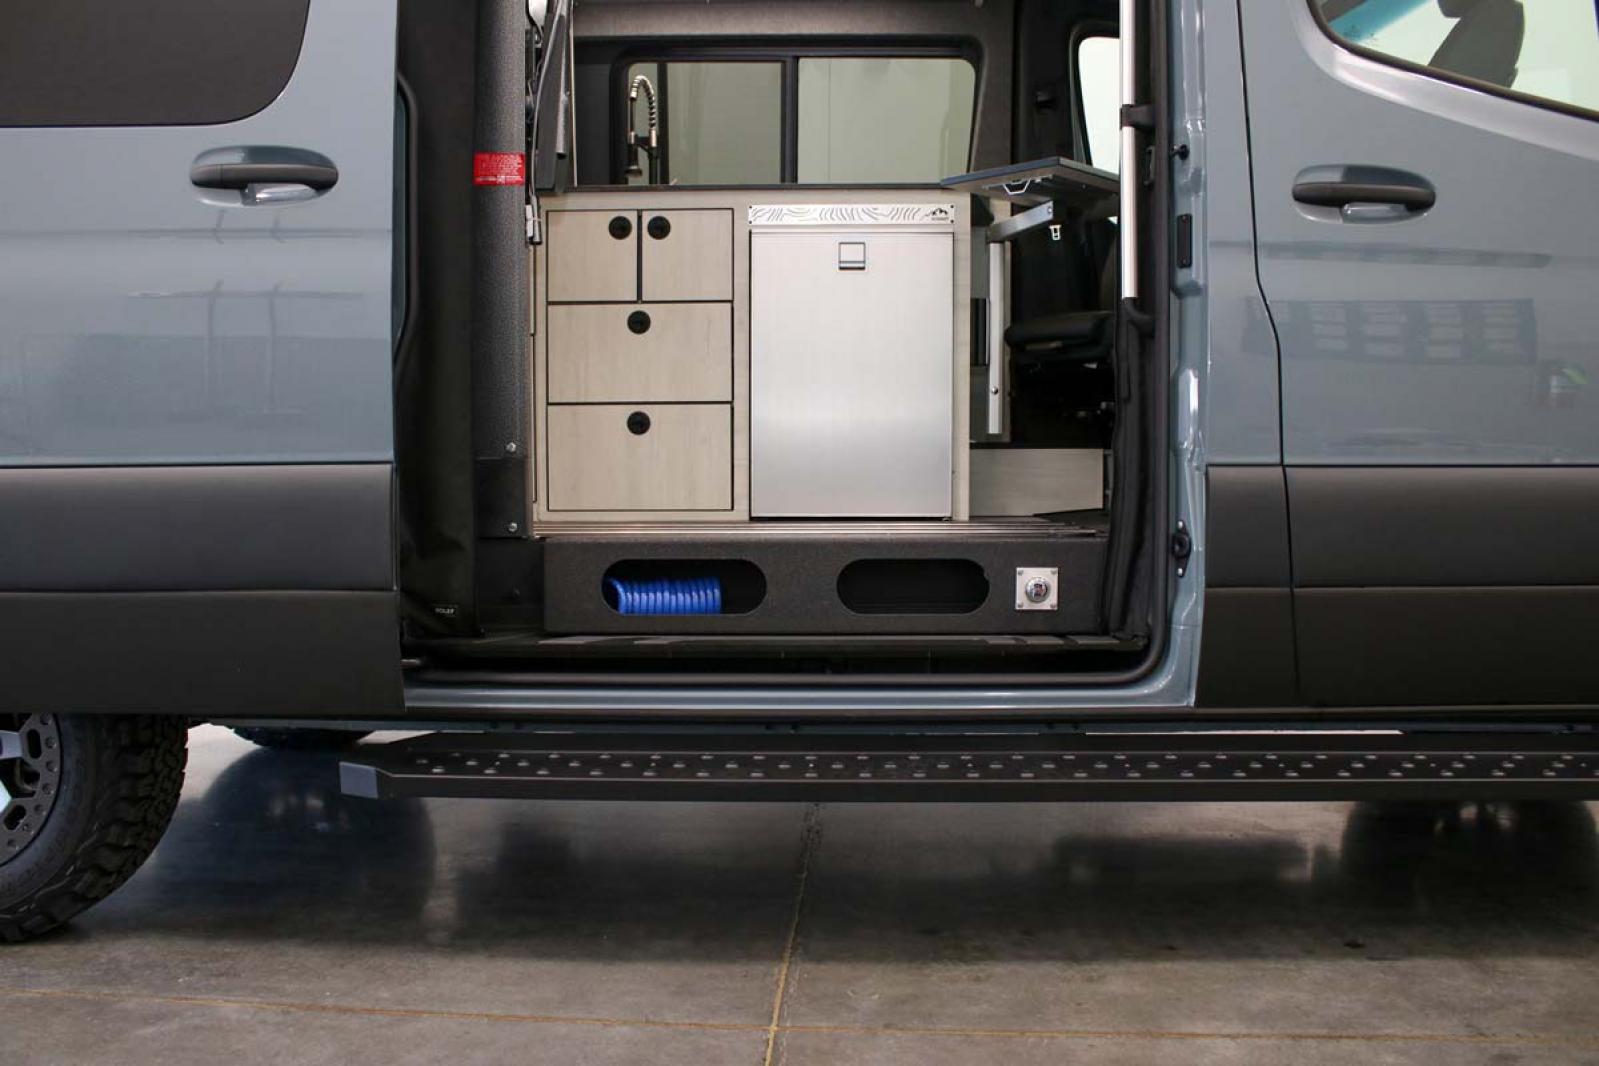 Clean Antero van with its side door open